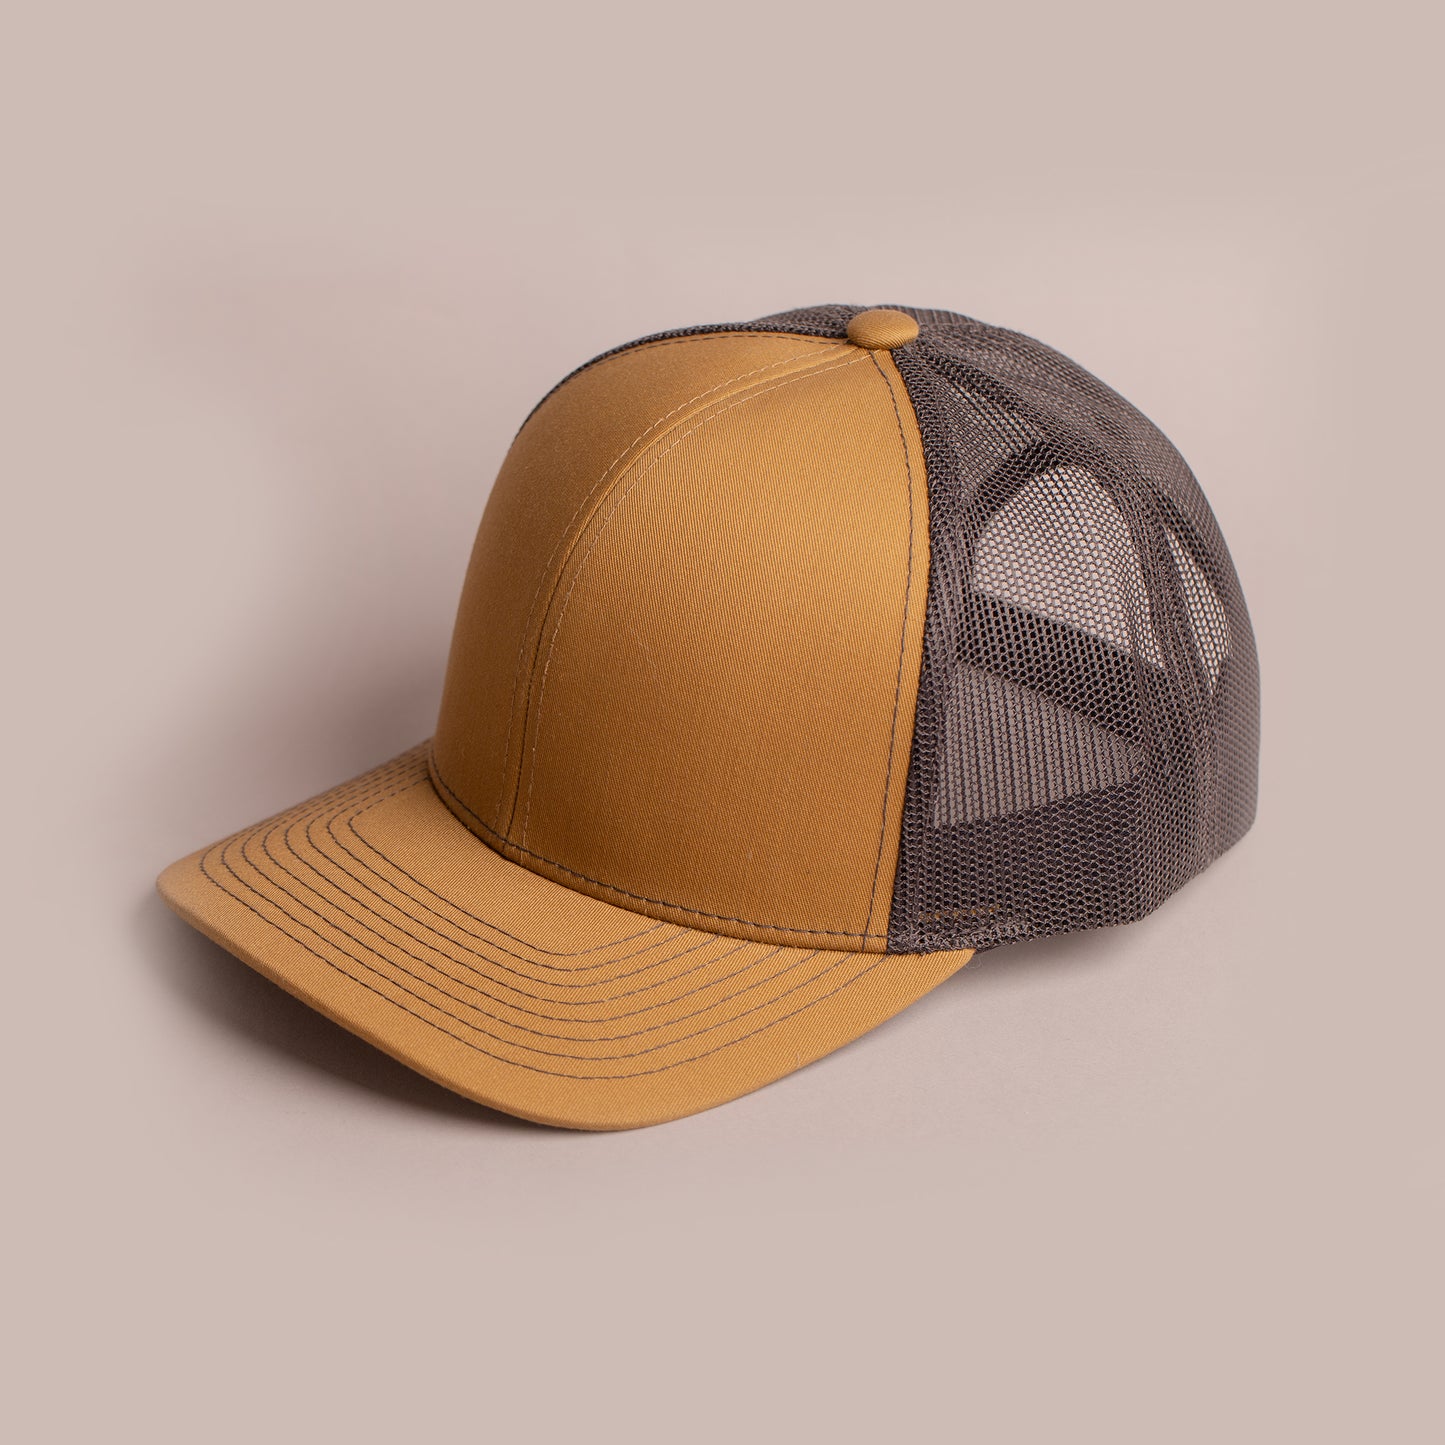 Blank Hat - Pacific Headwear Trucker - Duck Brown